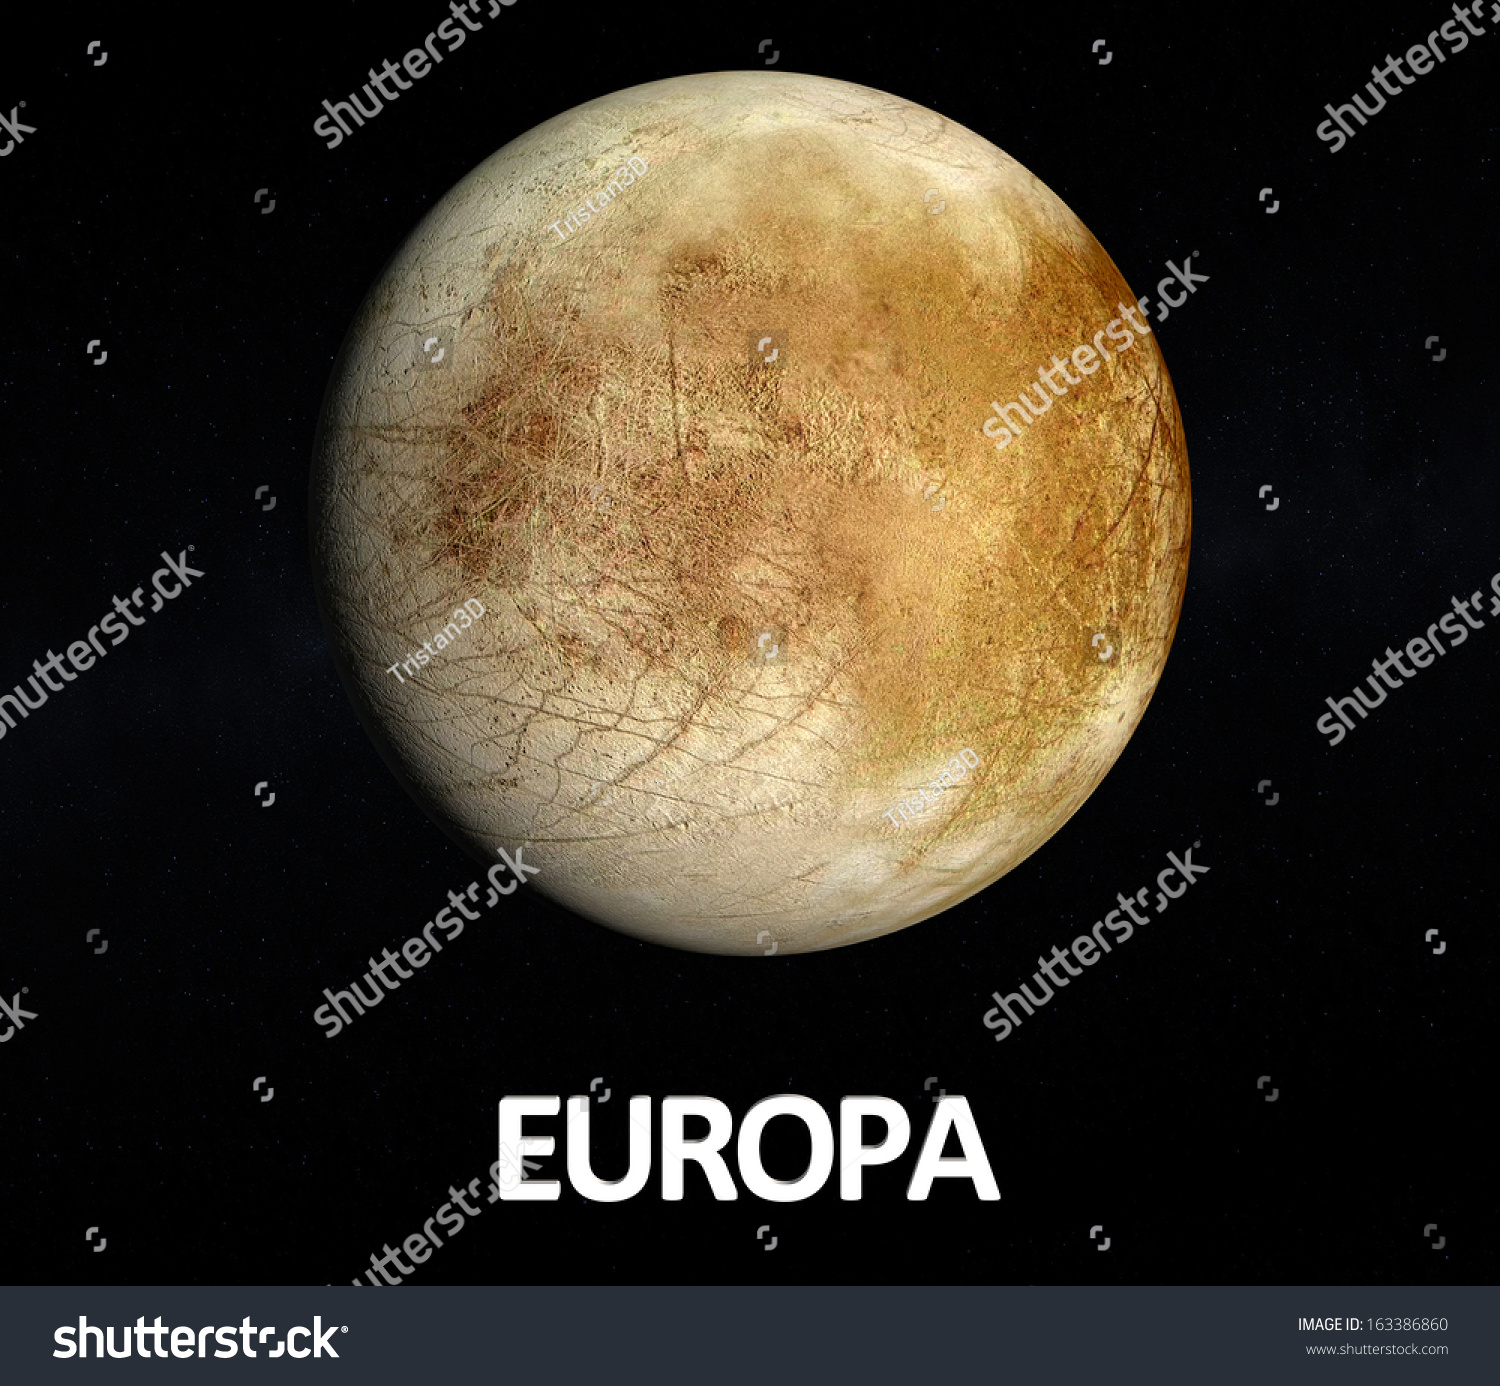 木星卫星欧罗巴的形象呈现在星空背景,英文字